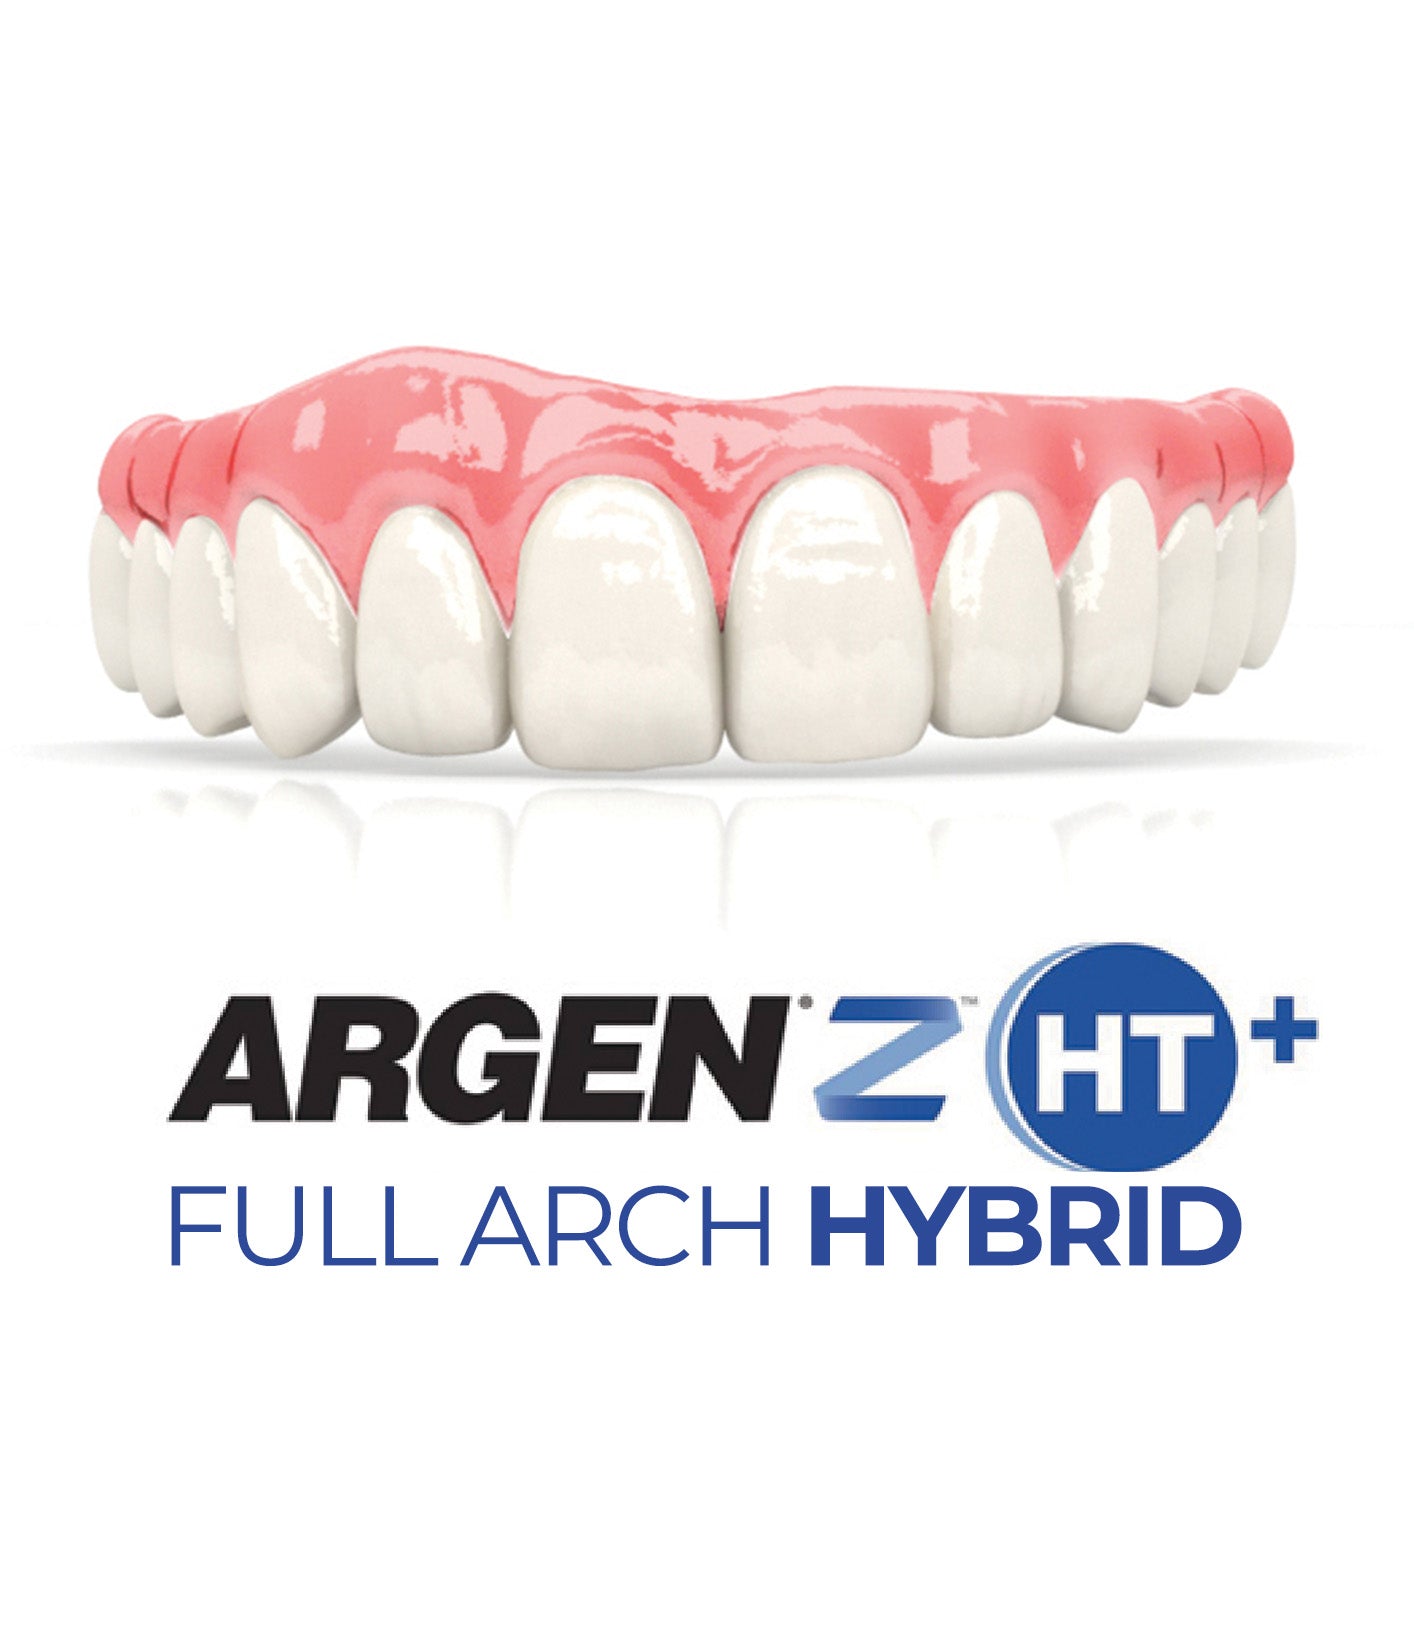 ArgenZ HT+ Full Arch Zirconia